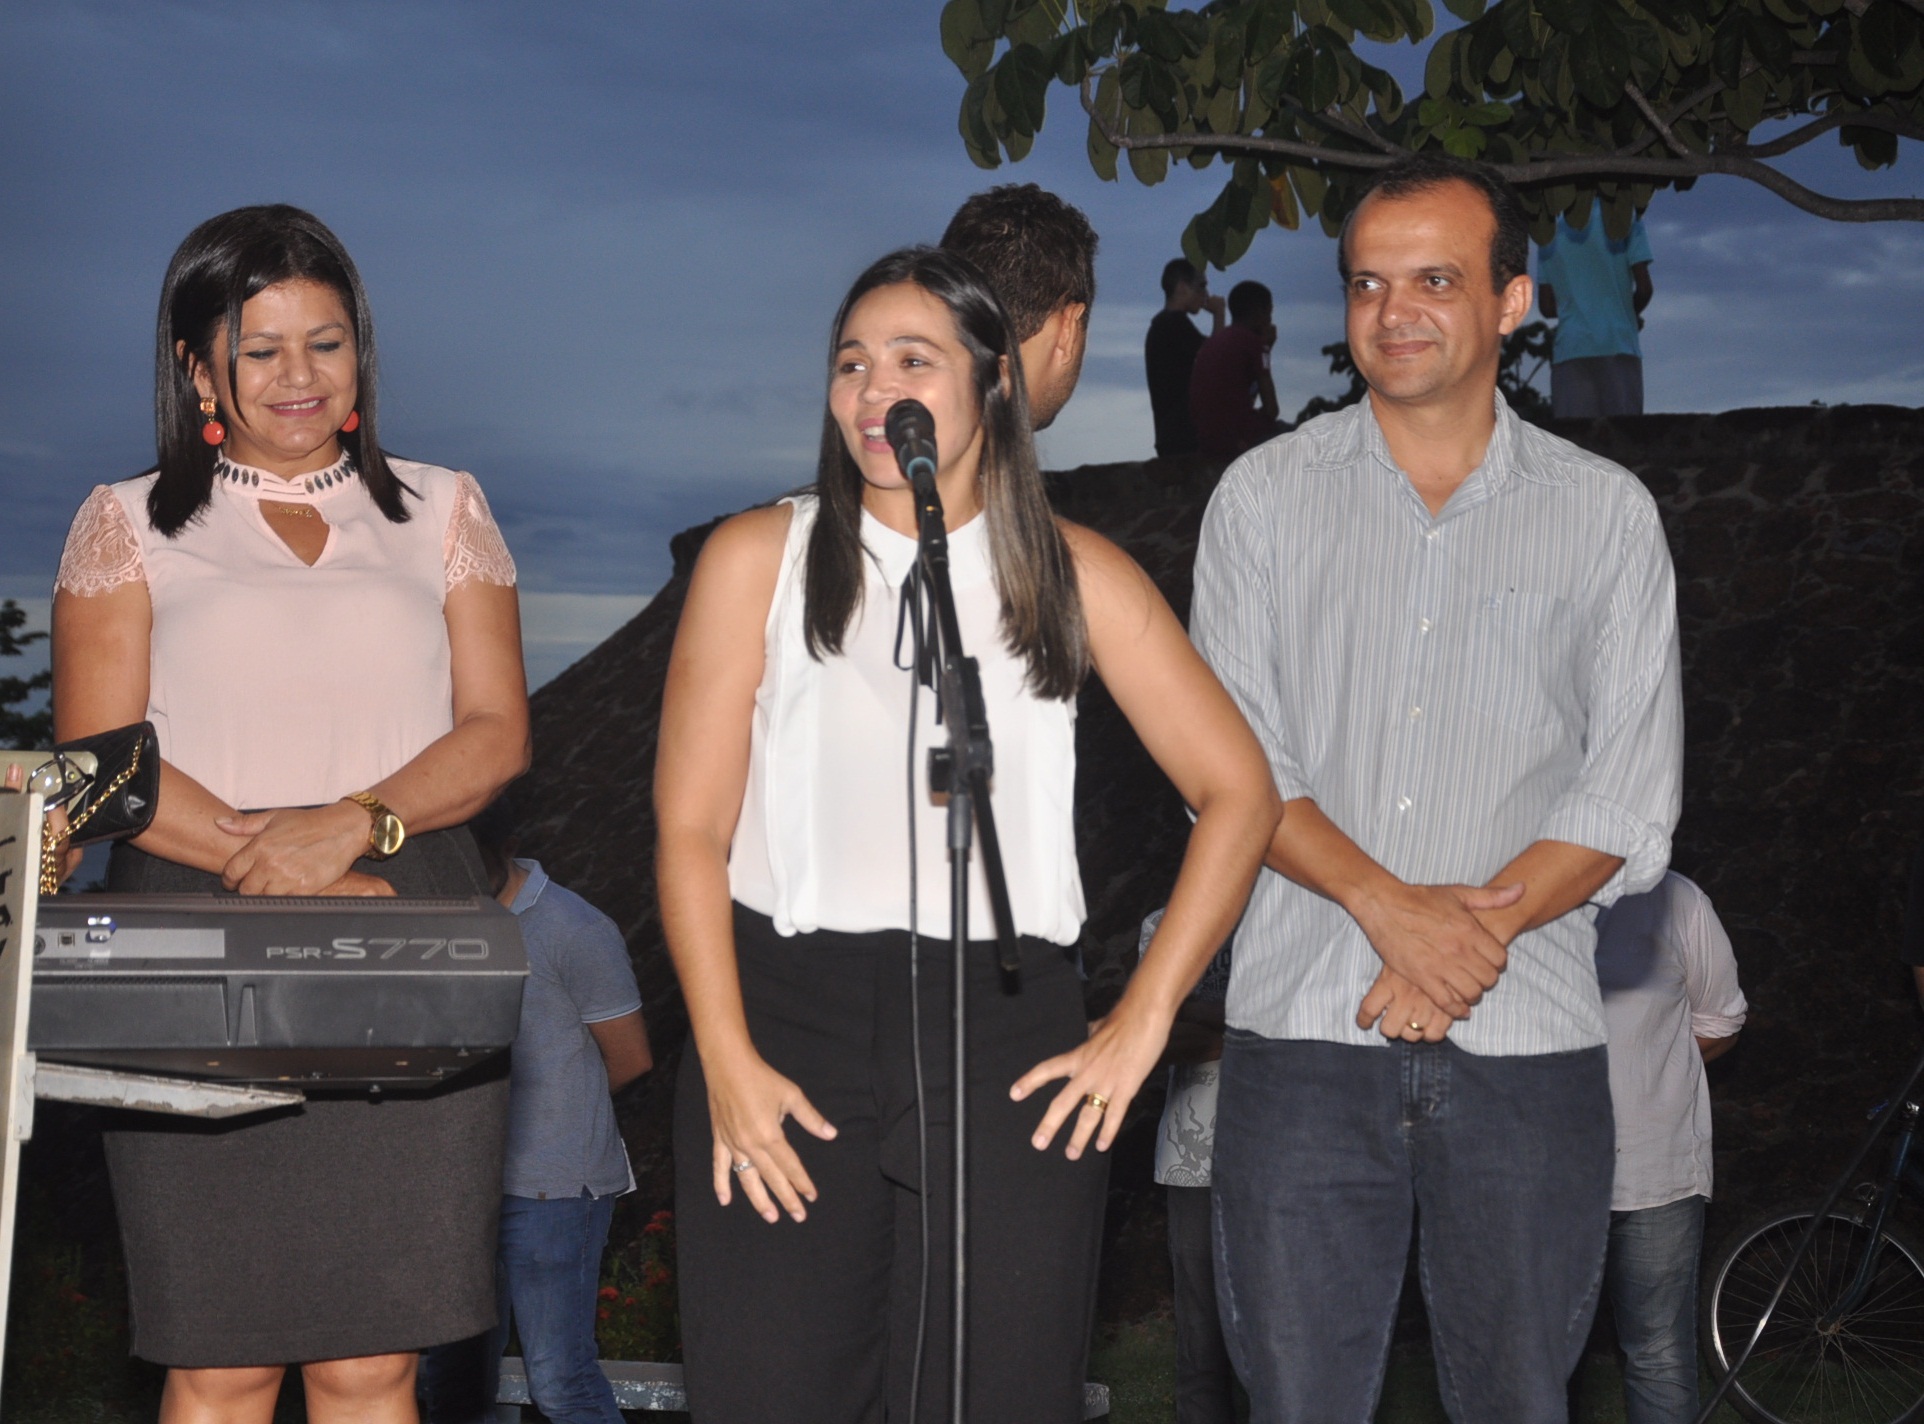 Mulheres são homenageadas em evento cultural organizado pela Prefeitura Dornil Sobrinho 33